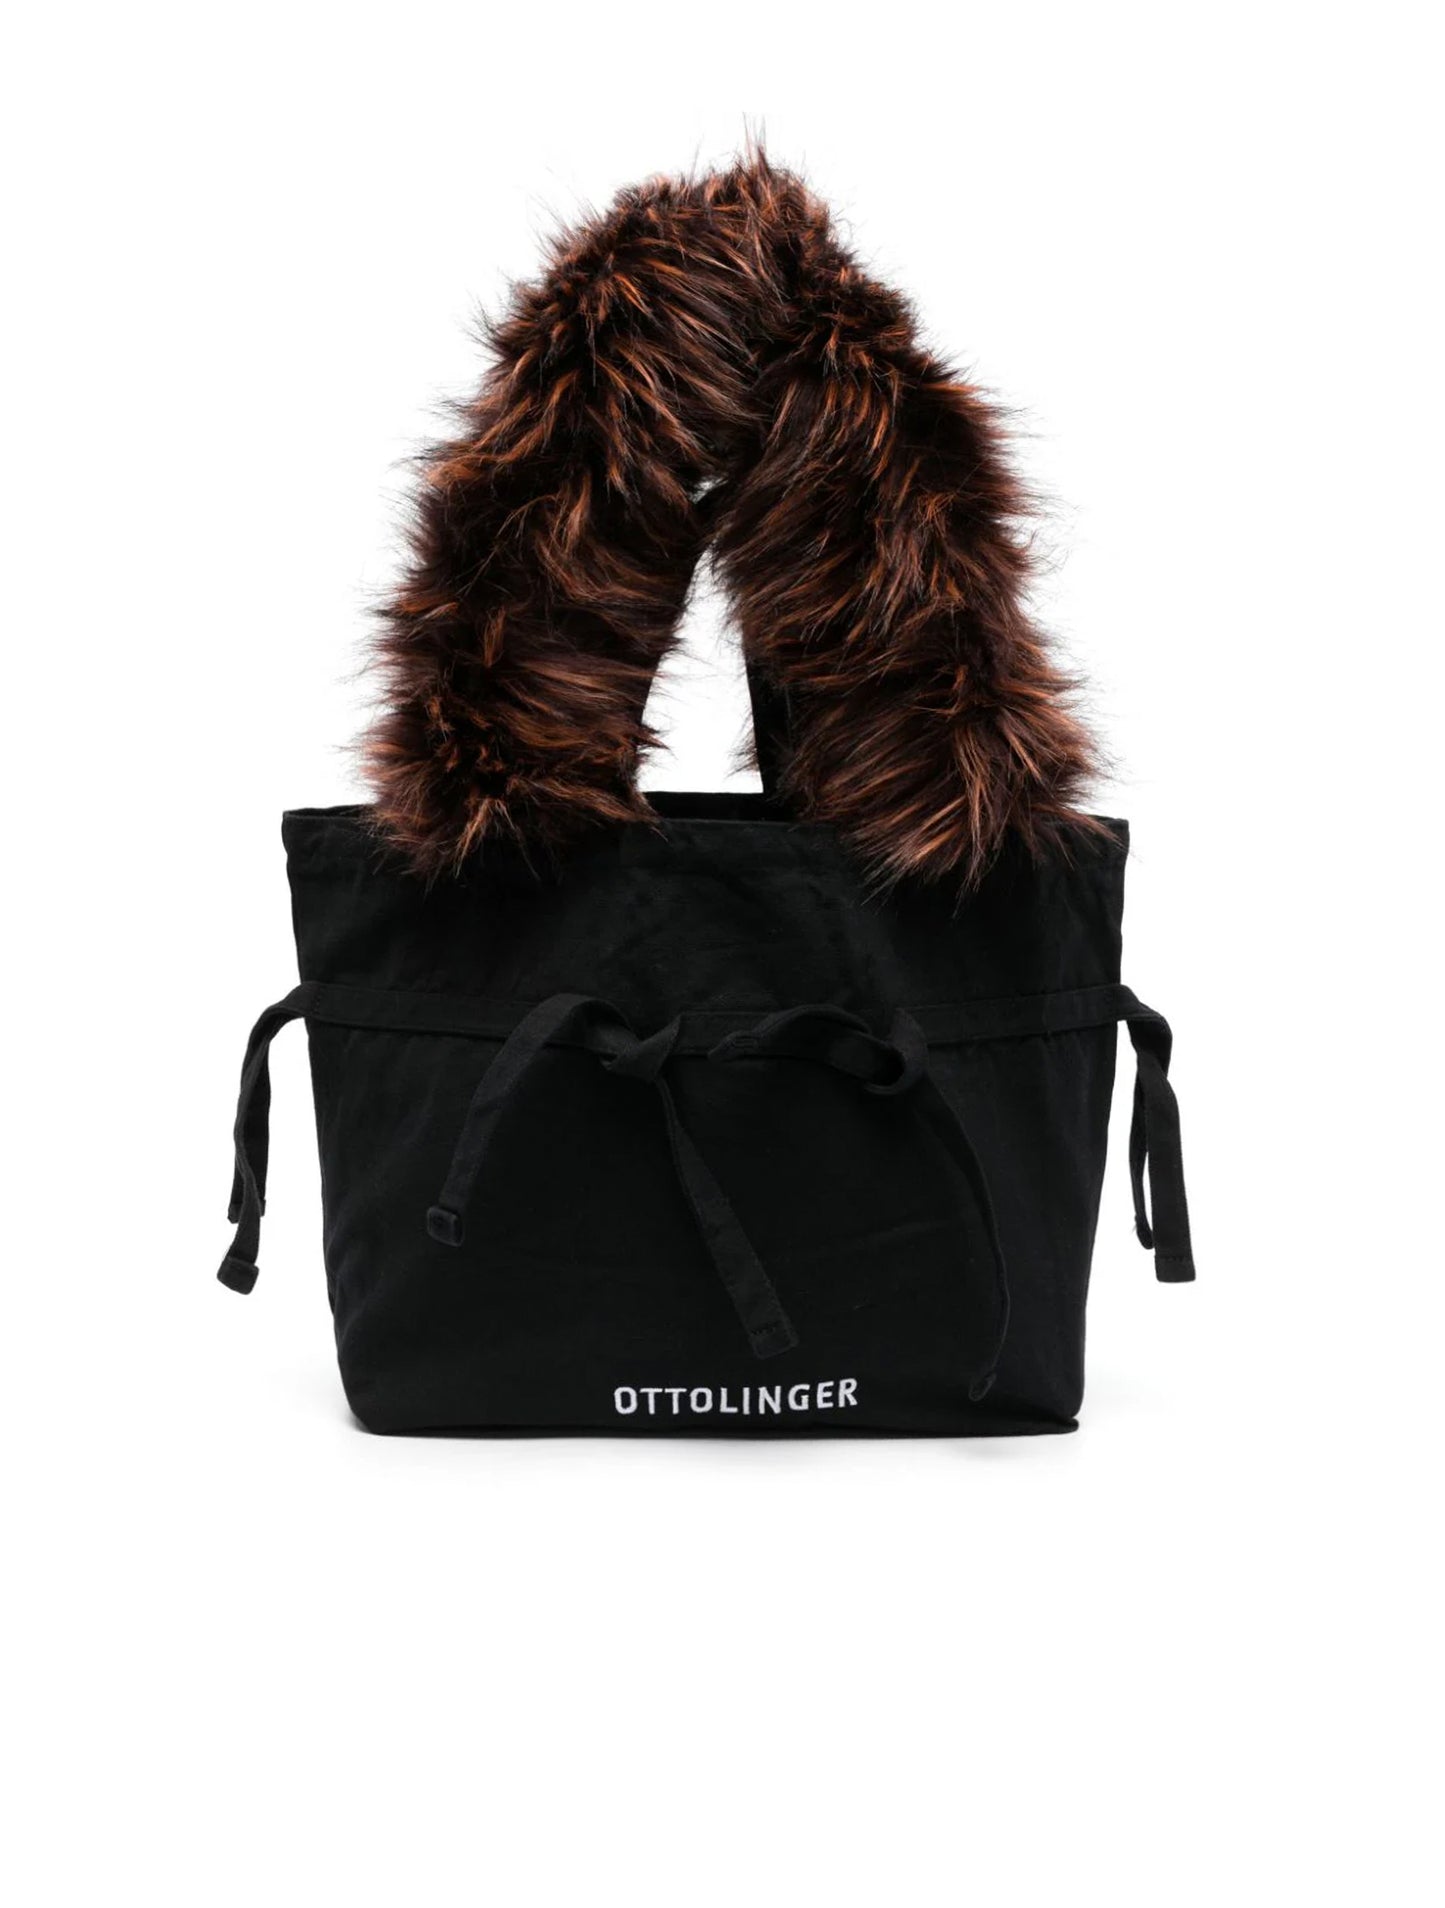 Ottolinger Black Shopping Bag